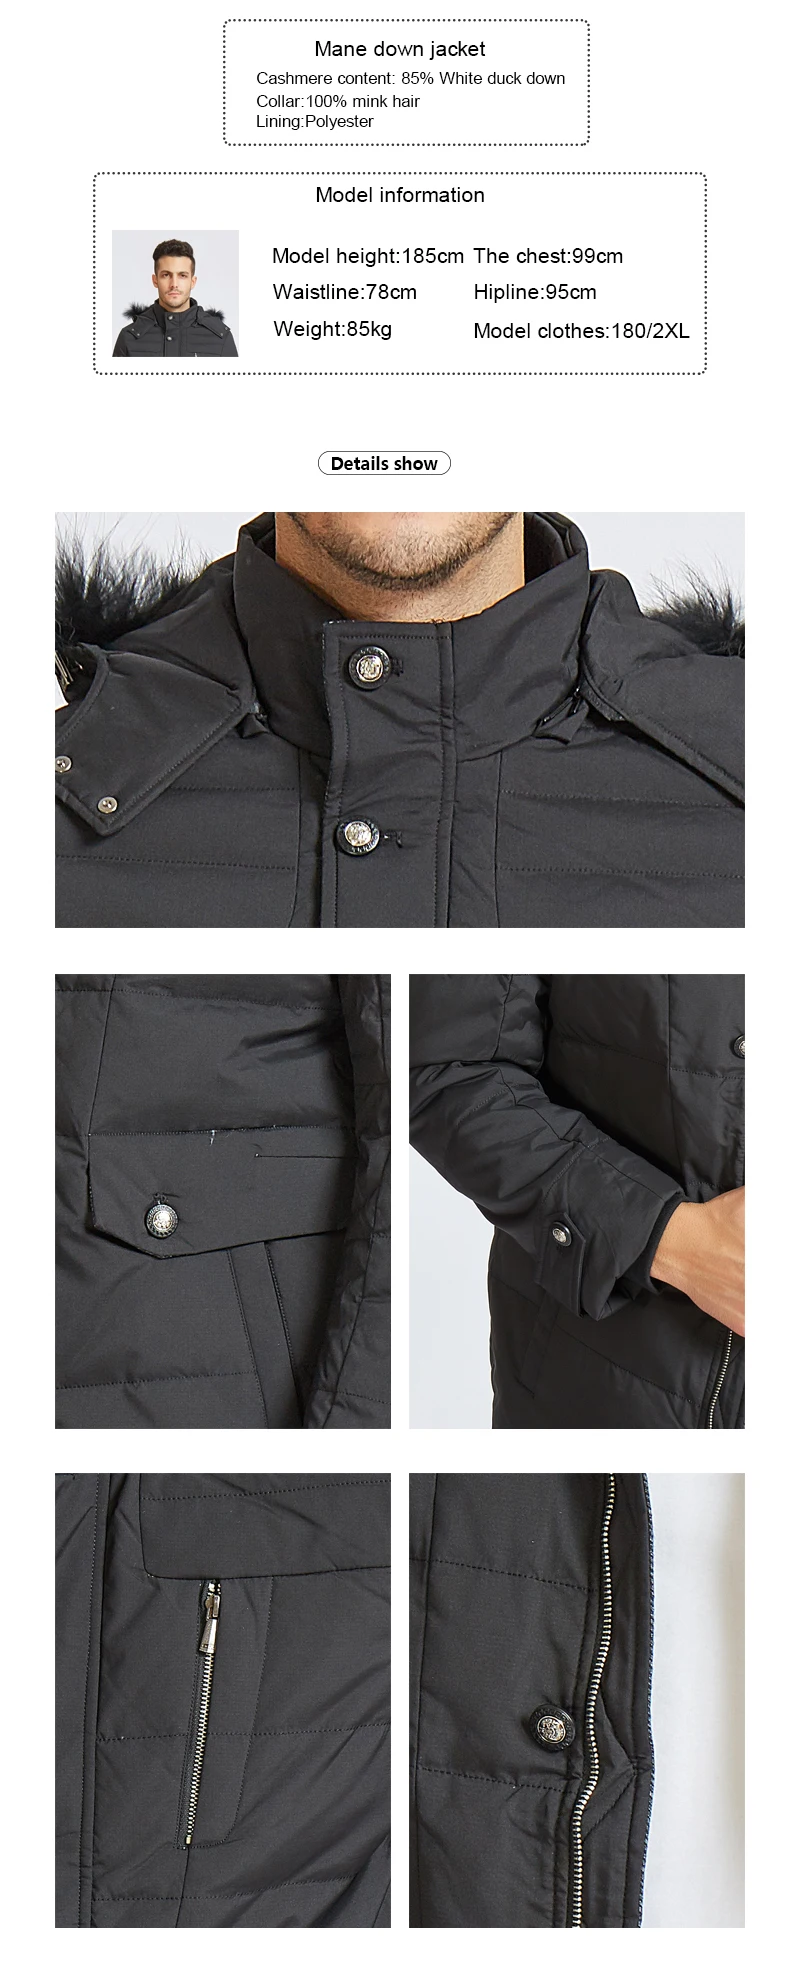 2018 новый бренд одежды Куртки толстые теплые мужчин пуховая куртка высокого качества меховой воротник с капюшоном пуховая куртка зимняя